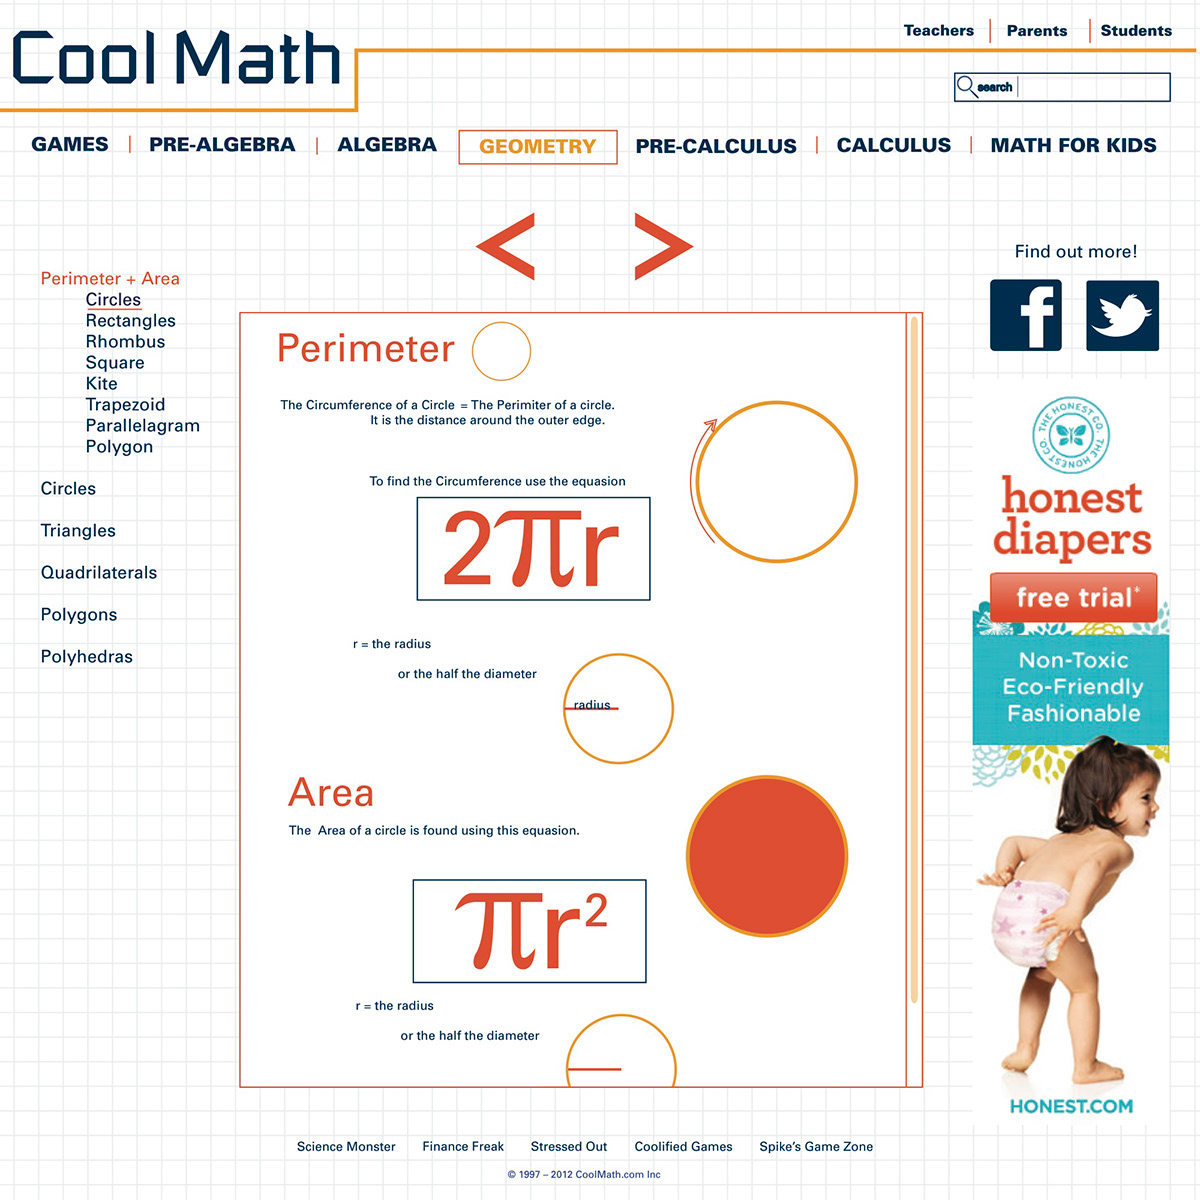 Website math cool math children game design